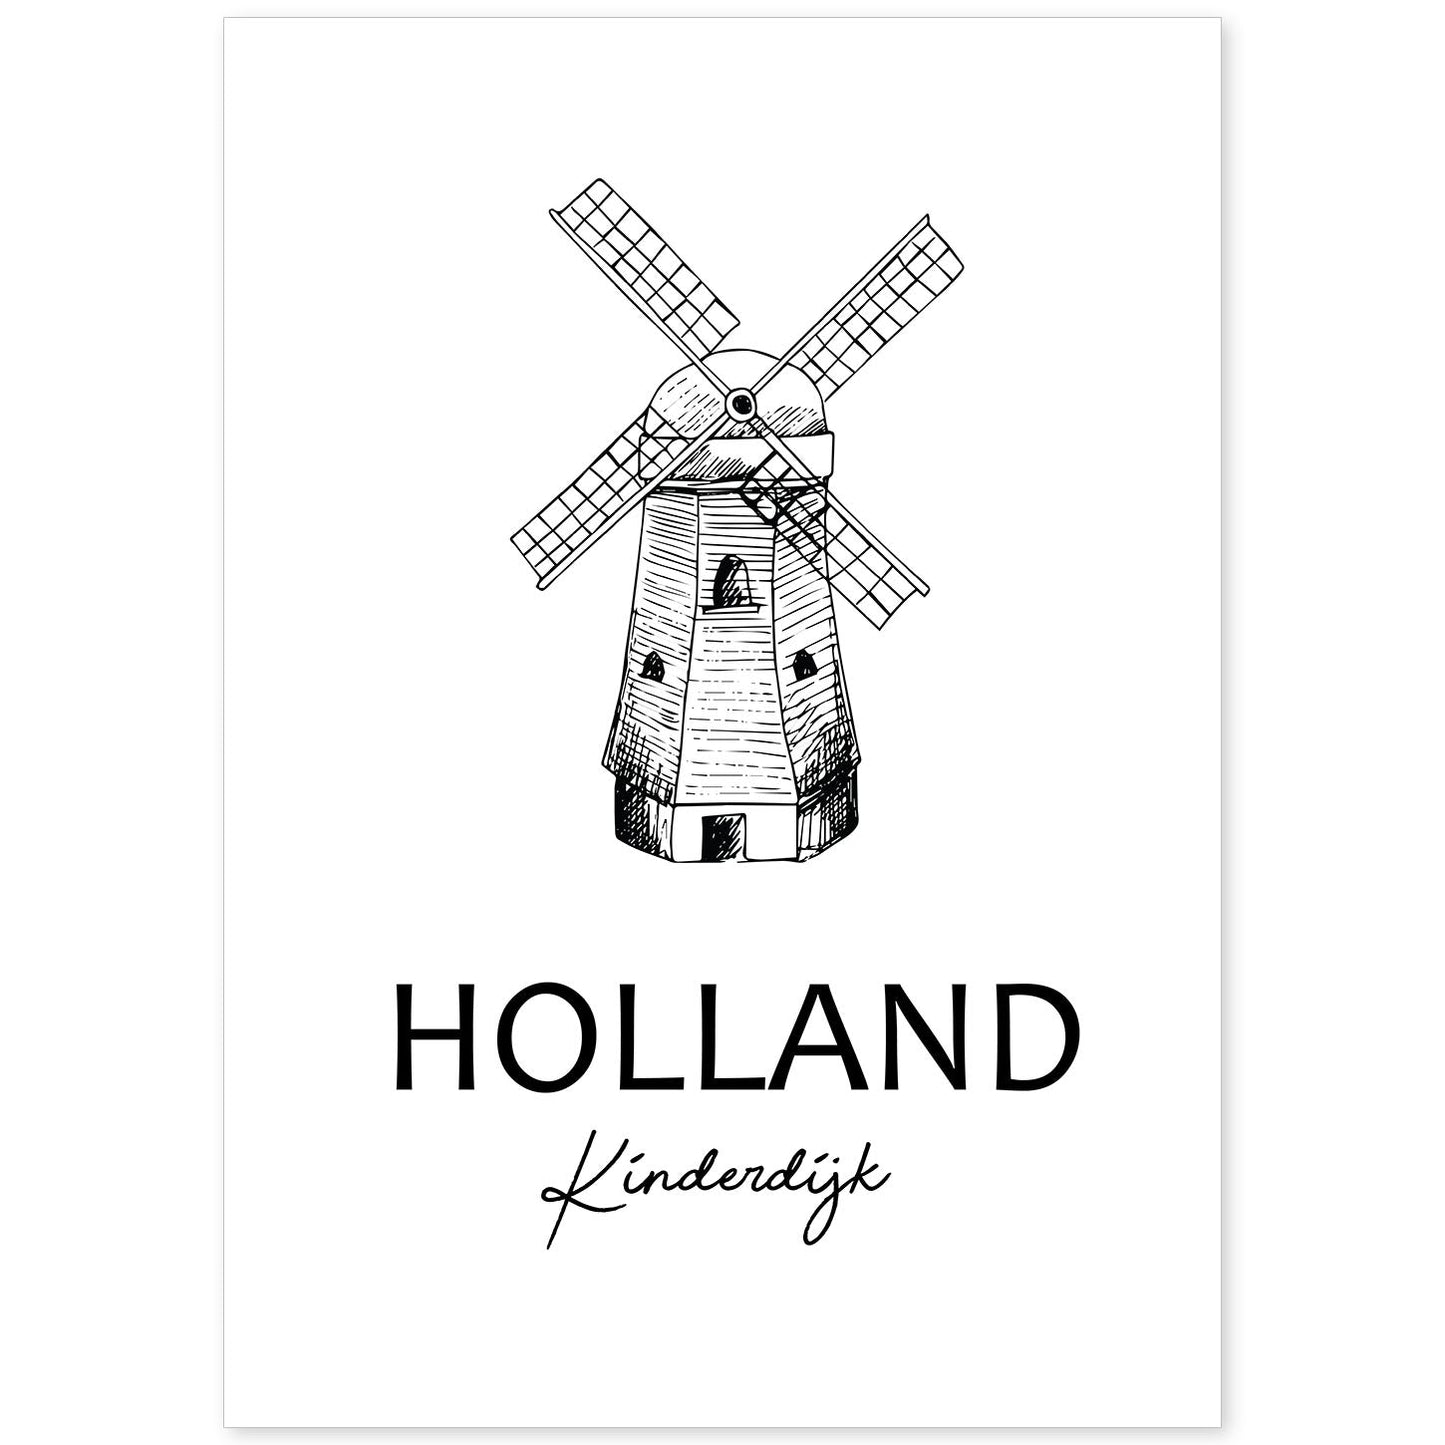 Poster de Holanda - Kinderdijk. Láminas con monumentos de ciudades.-Artwork-Nacnic-A4-Sin marco-Nacnic Estudio SL